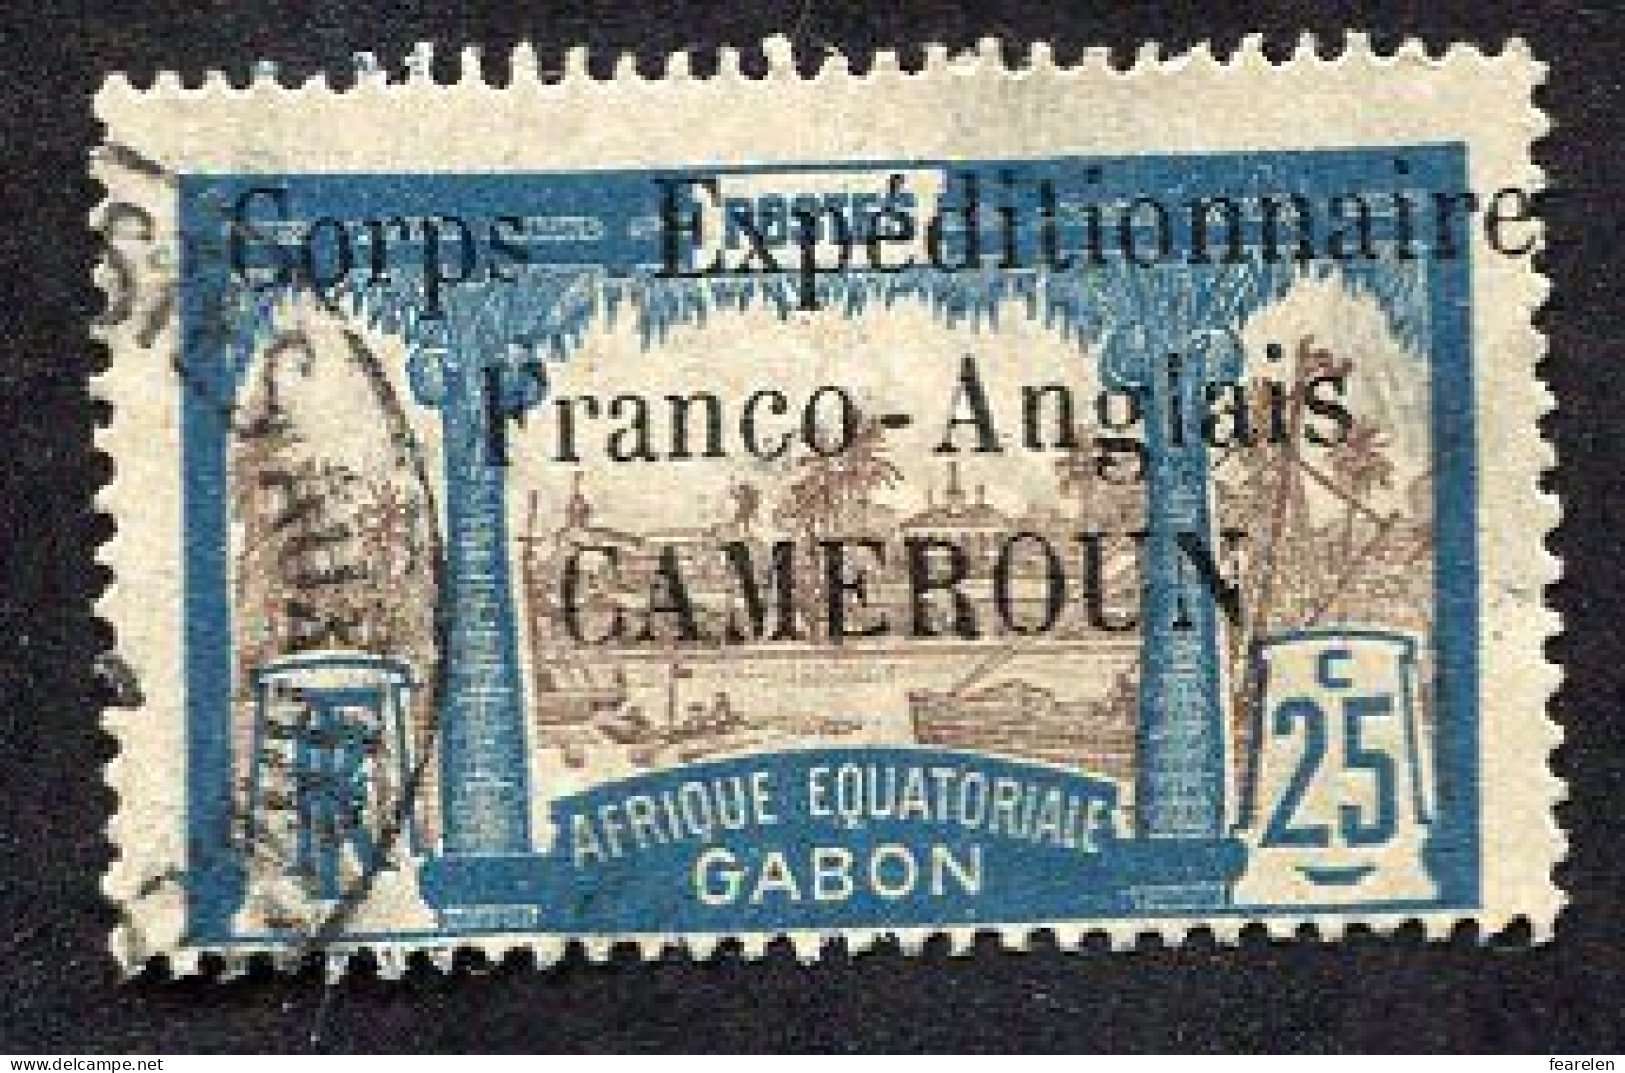 Colonie Française, Cameroun N°44 Oblitéré ; Qualité Très Beau - Used Stamps